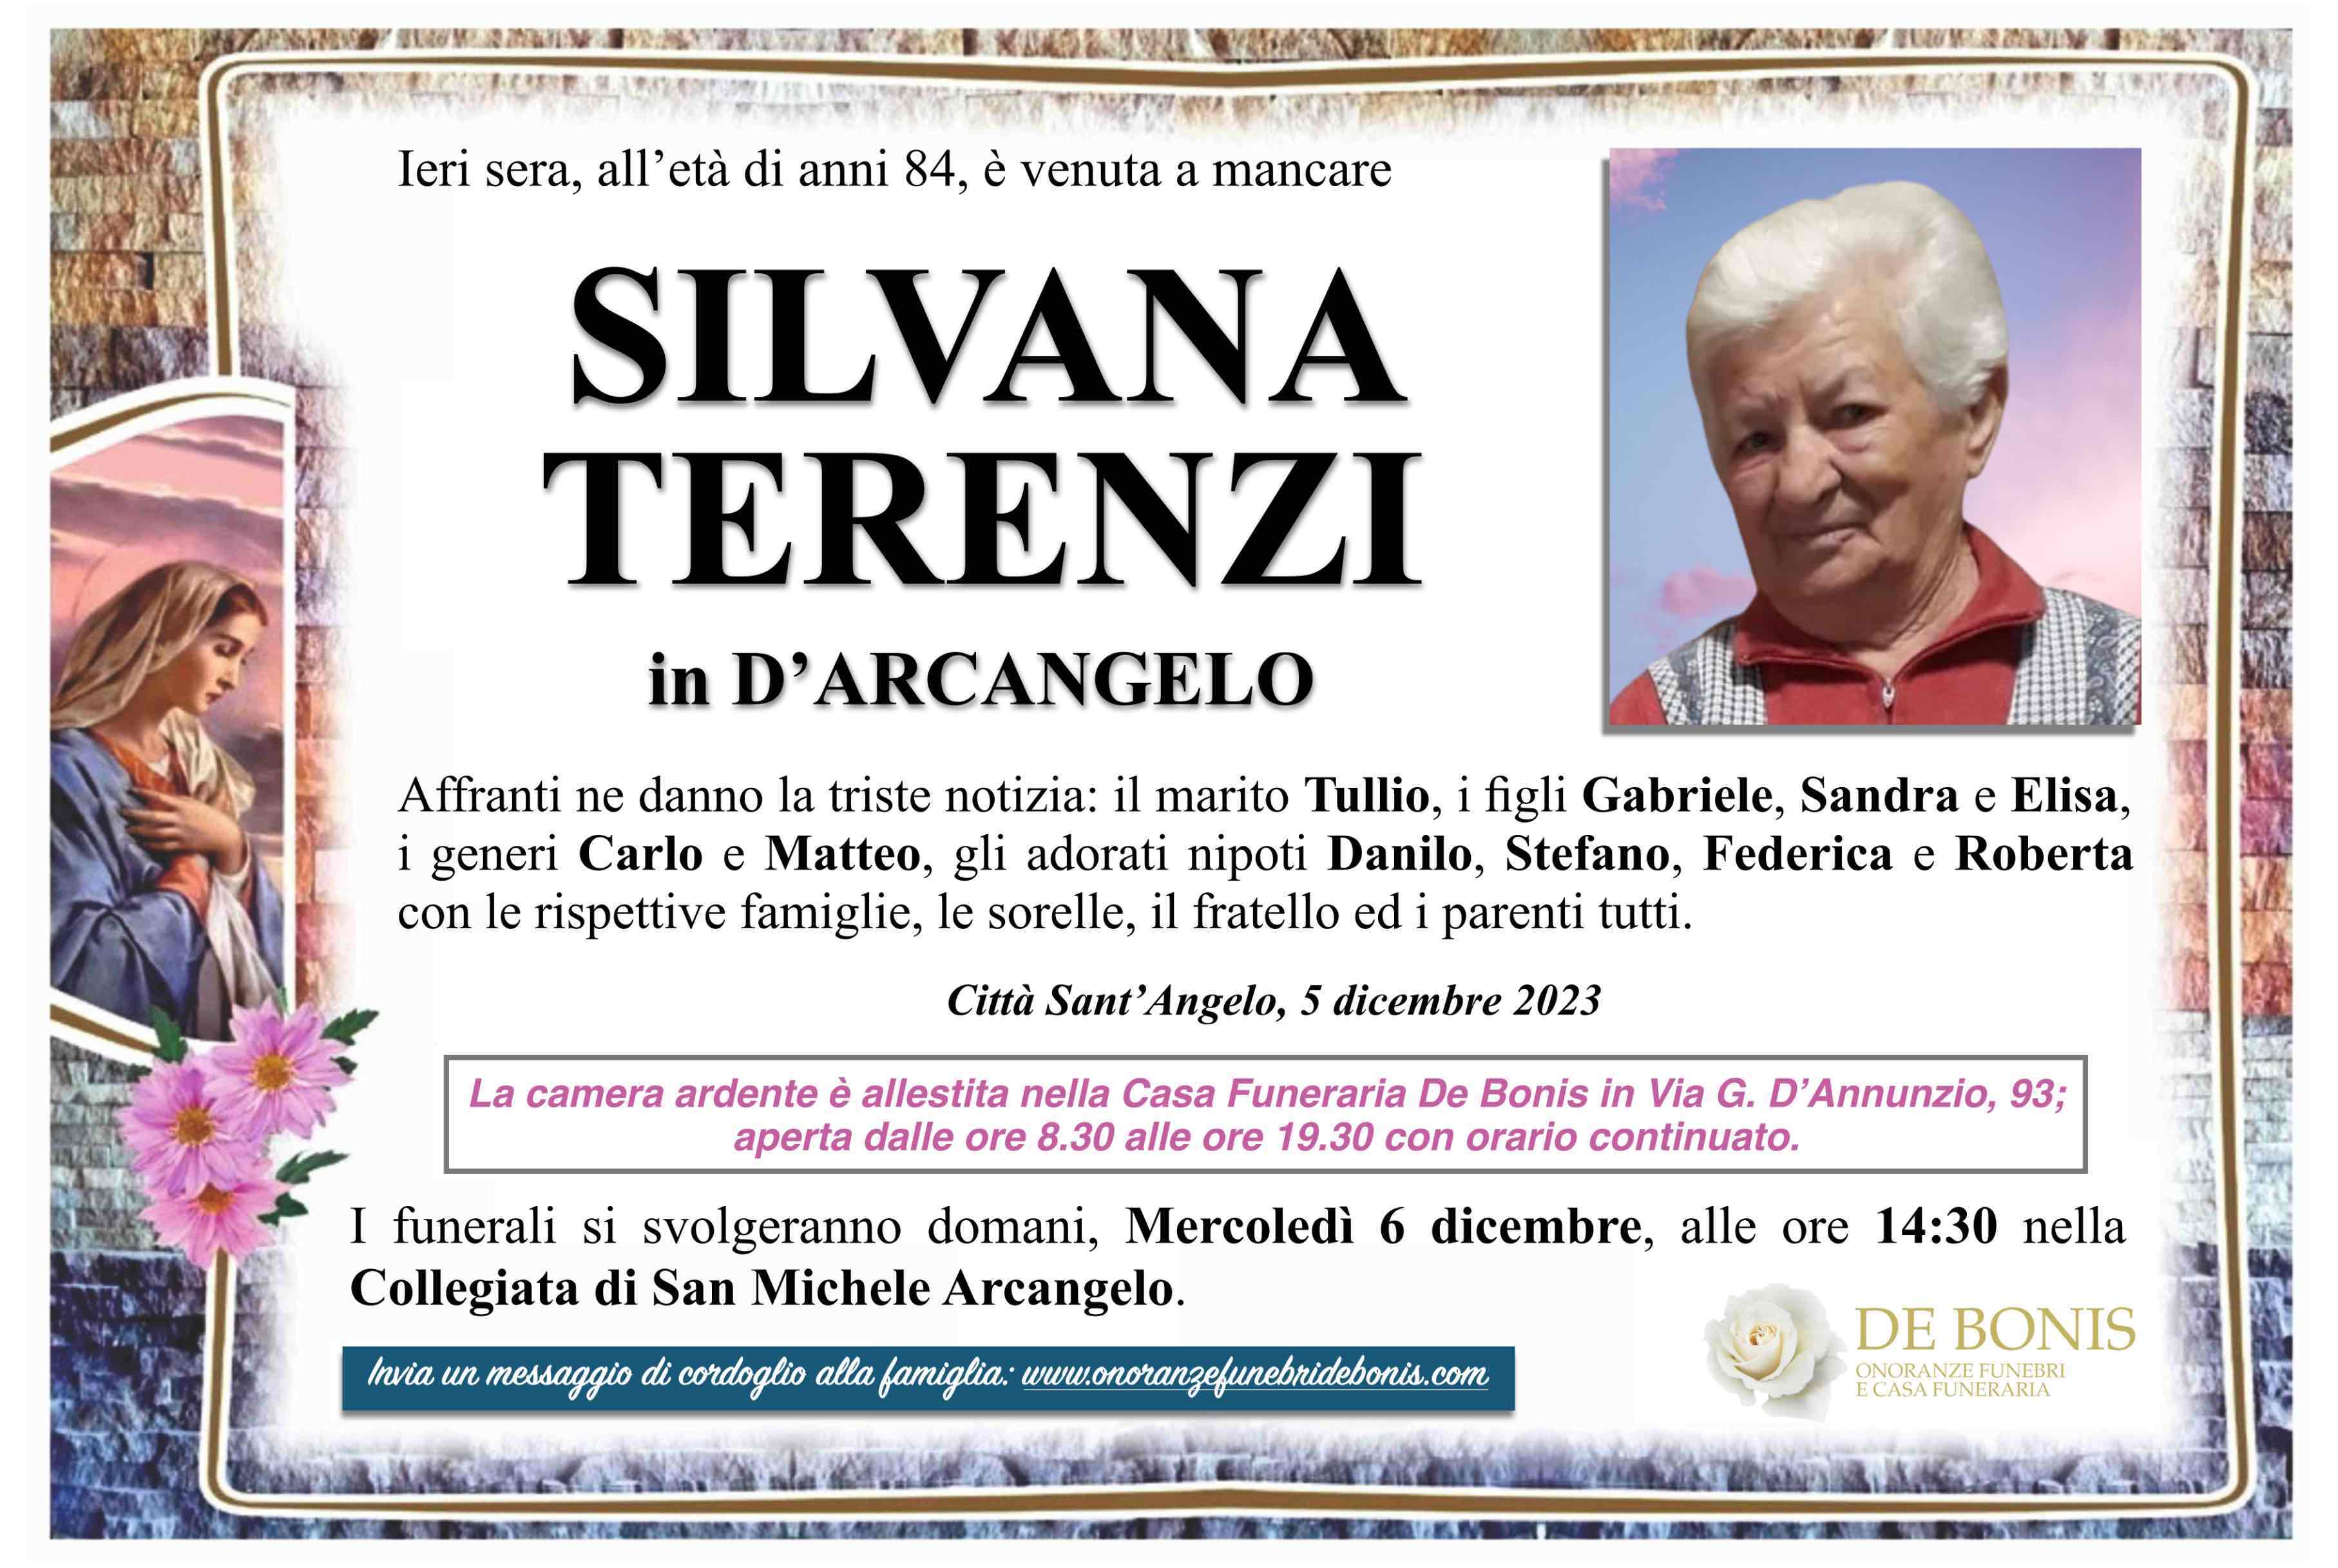 Silvana Terenzi